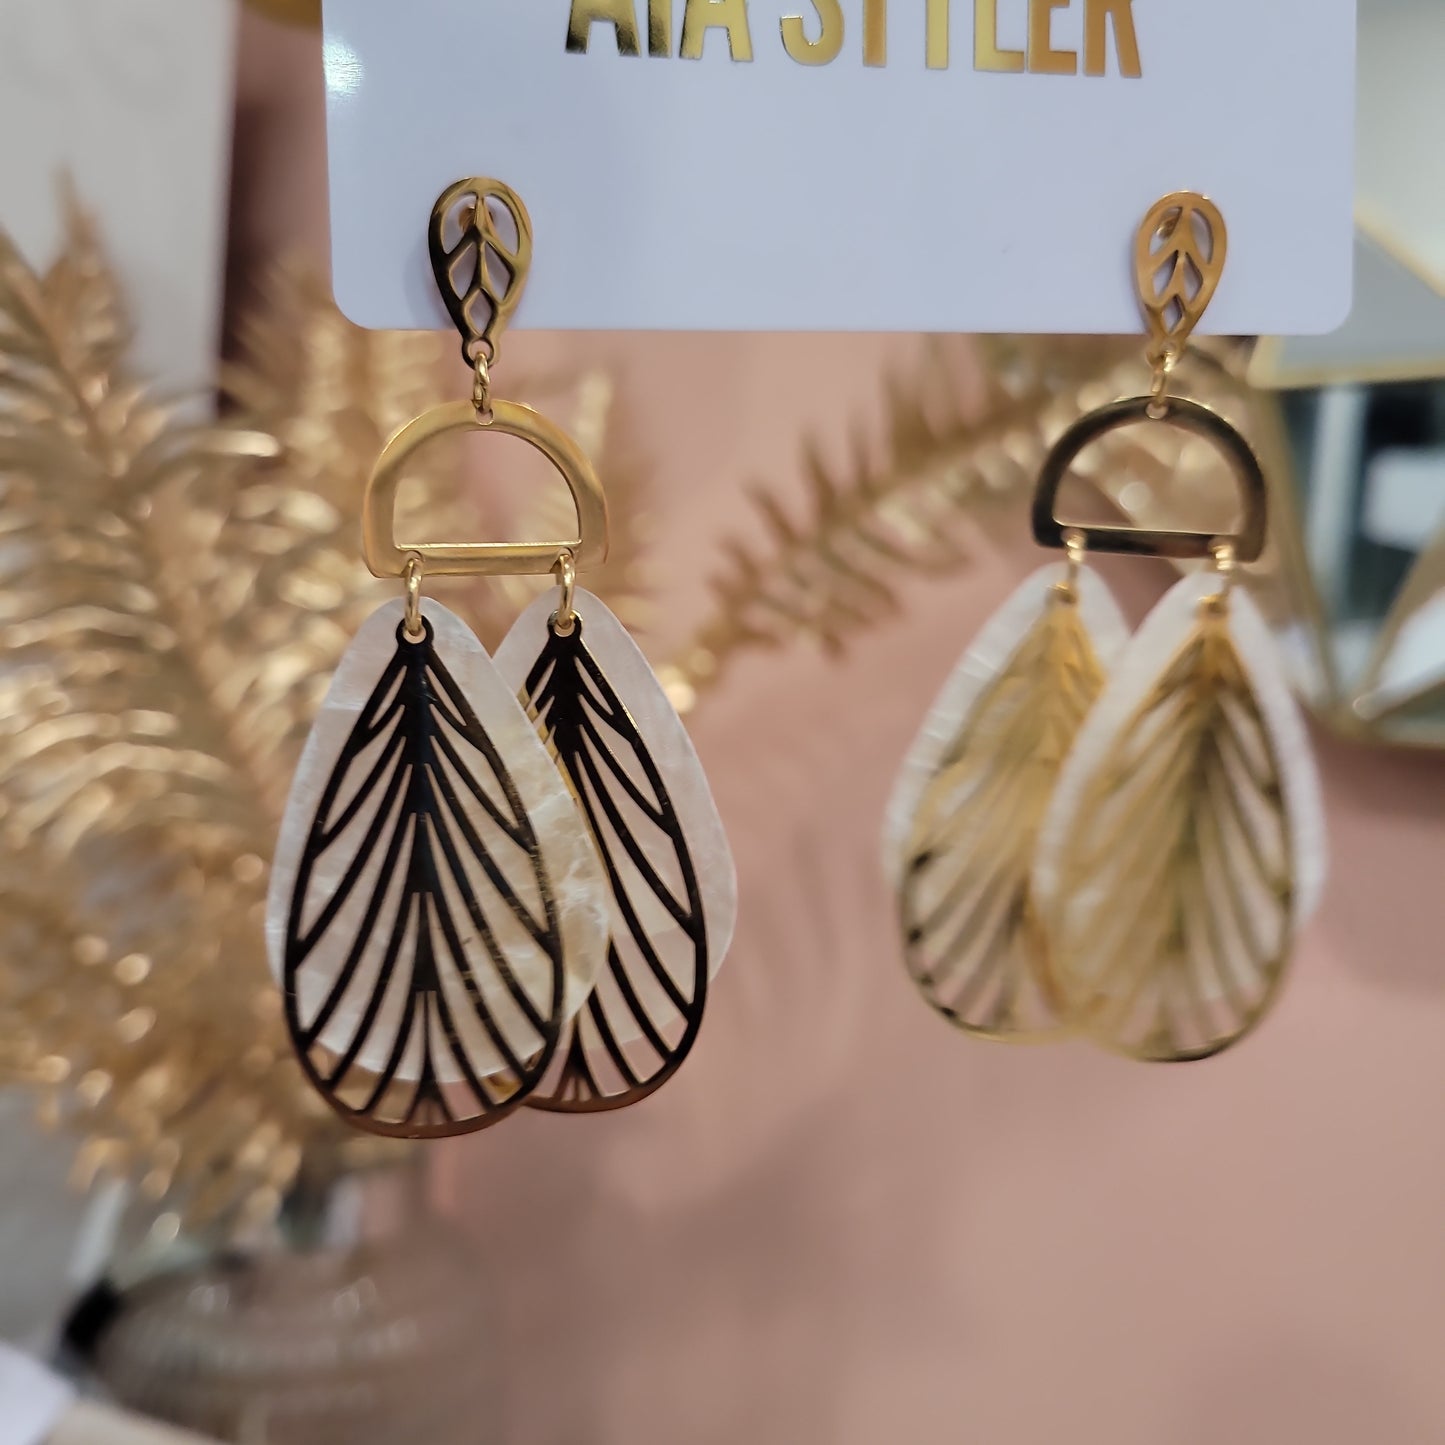 Palm shell earrings